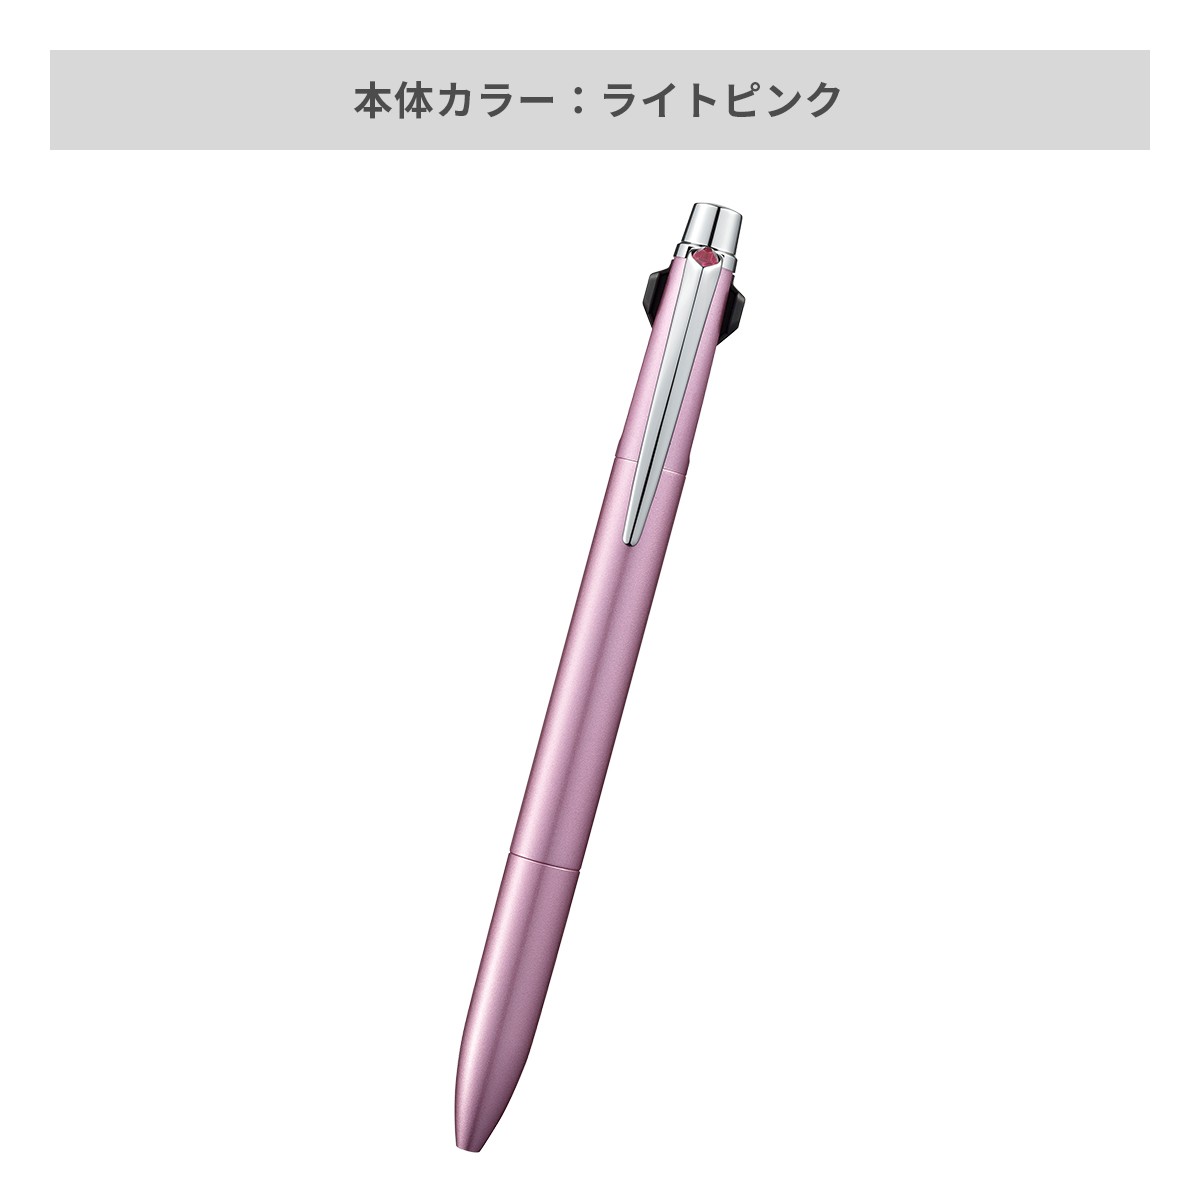 【短納期】三菱鉛筆 ジェットストリーム プライム 3色ボールペン 0.5mm【名入れボールペン / レーザー彫刻】 画像3